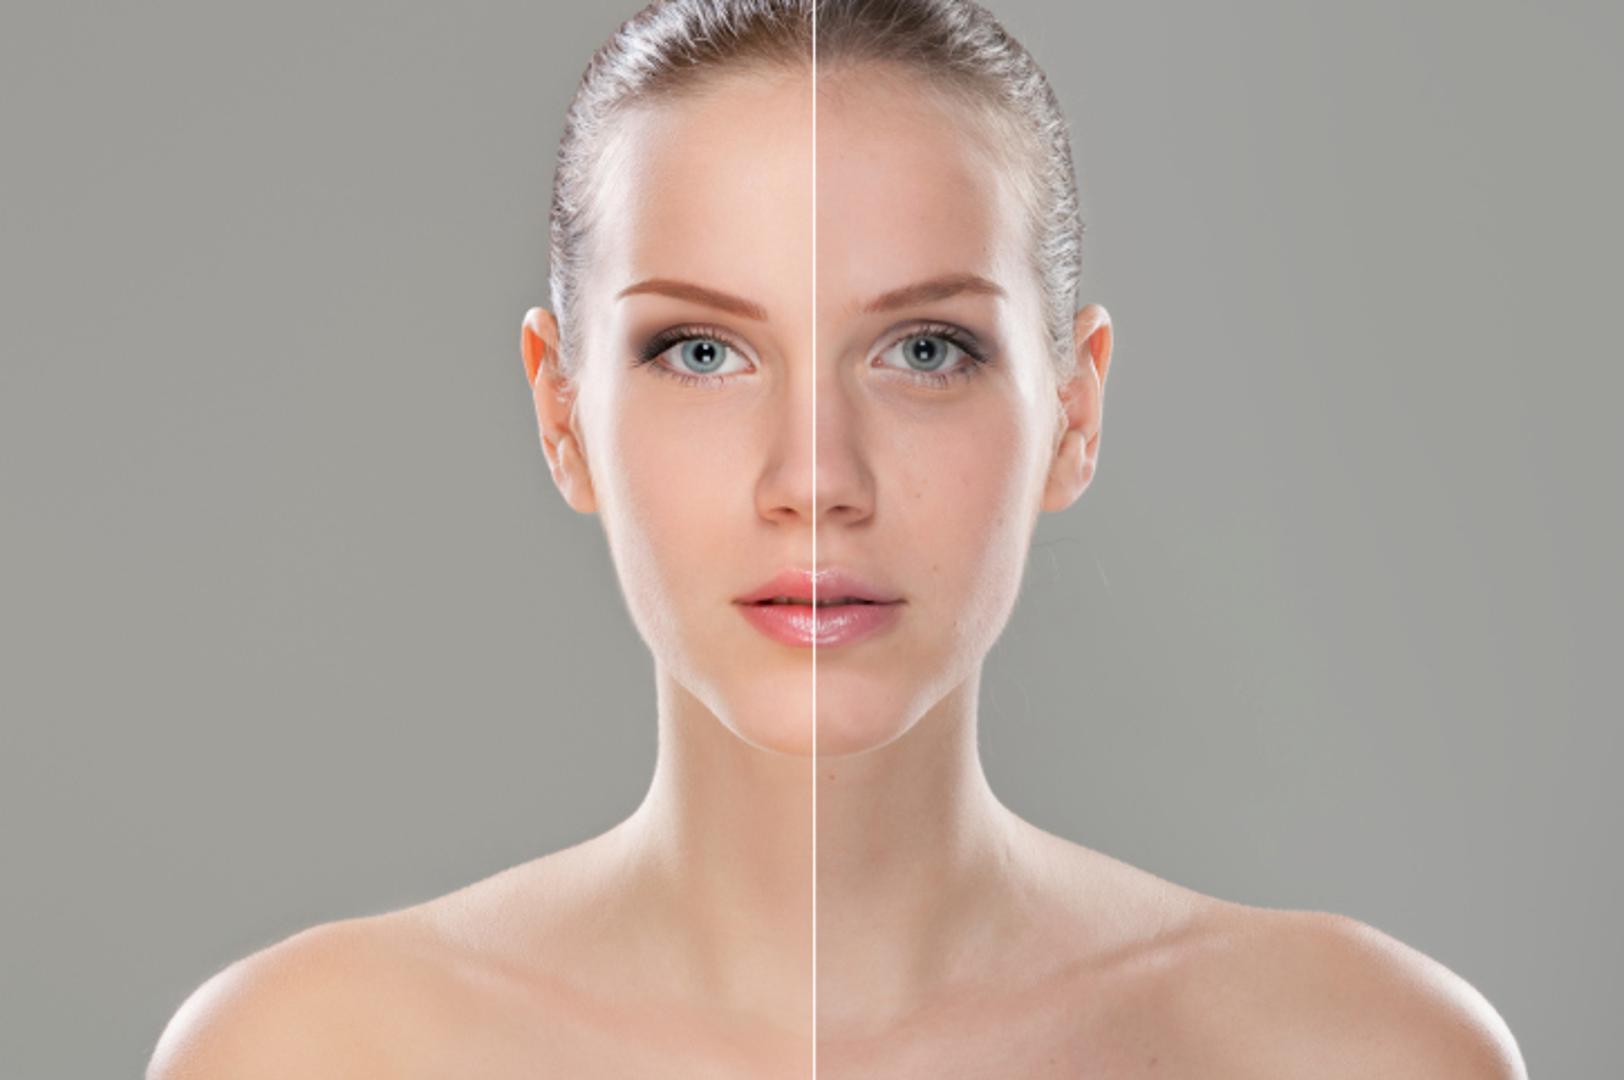 Dermatologinja Visha Skincare otkrila je zbog kojih to svakodnevnih navika koža može izgledati puno starije nego što je.